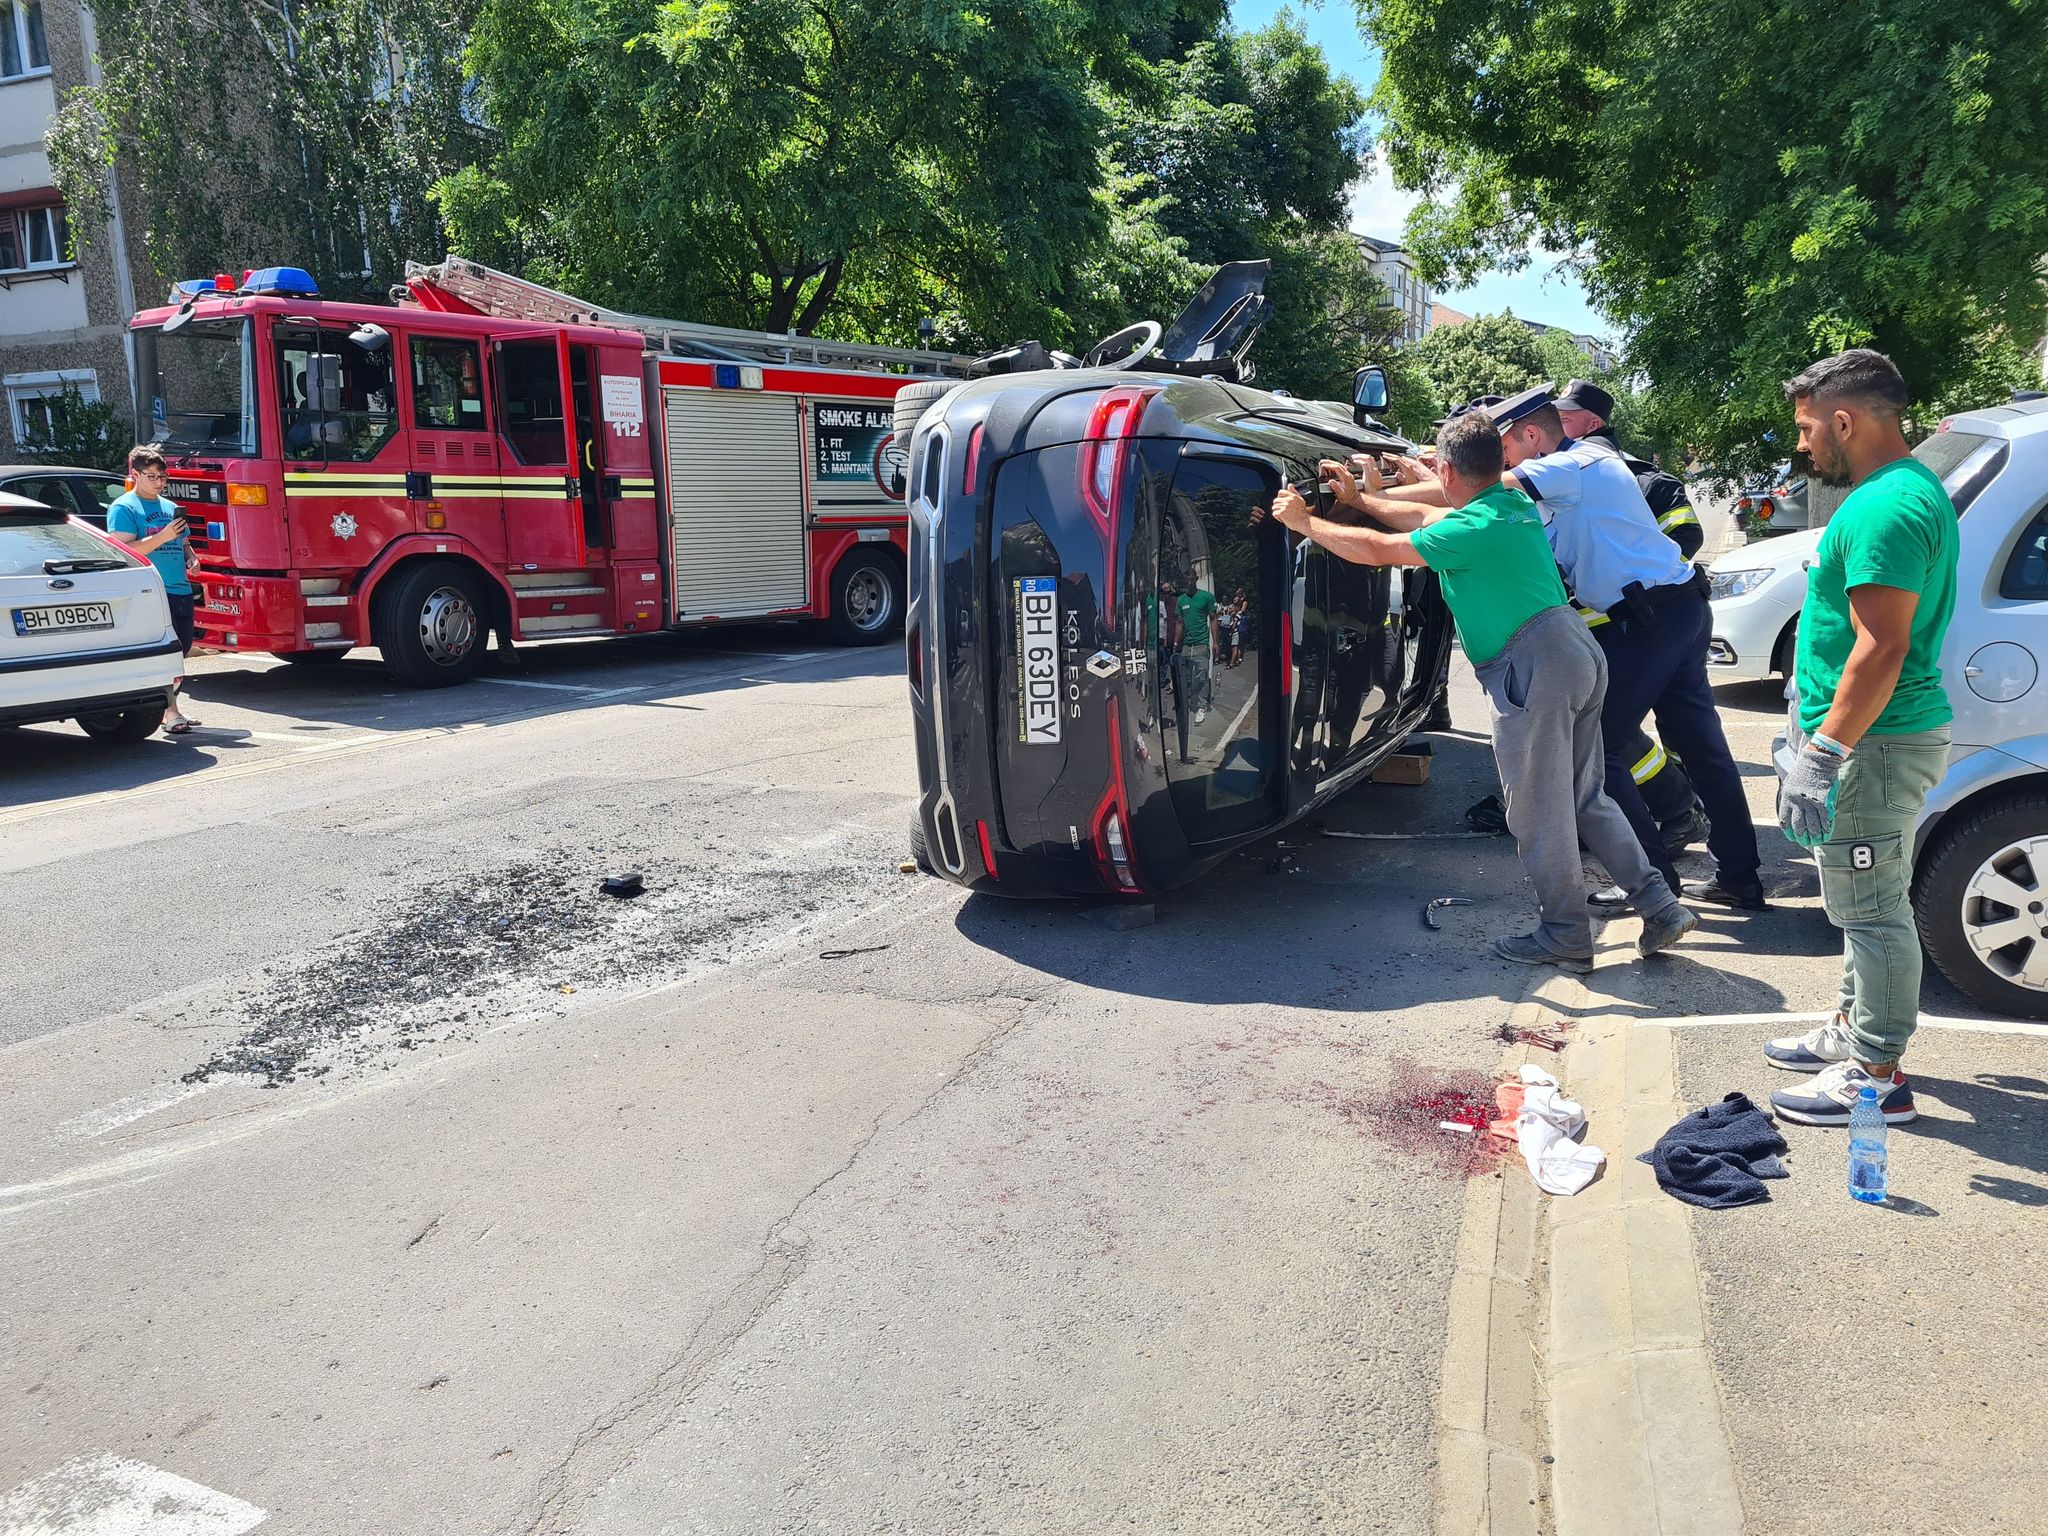 FOTO: Accident pe strada Gradinarilor din Oradea 15.06.2022